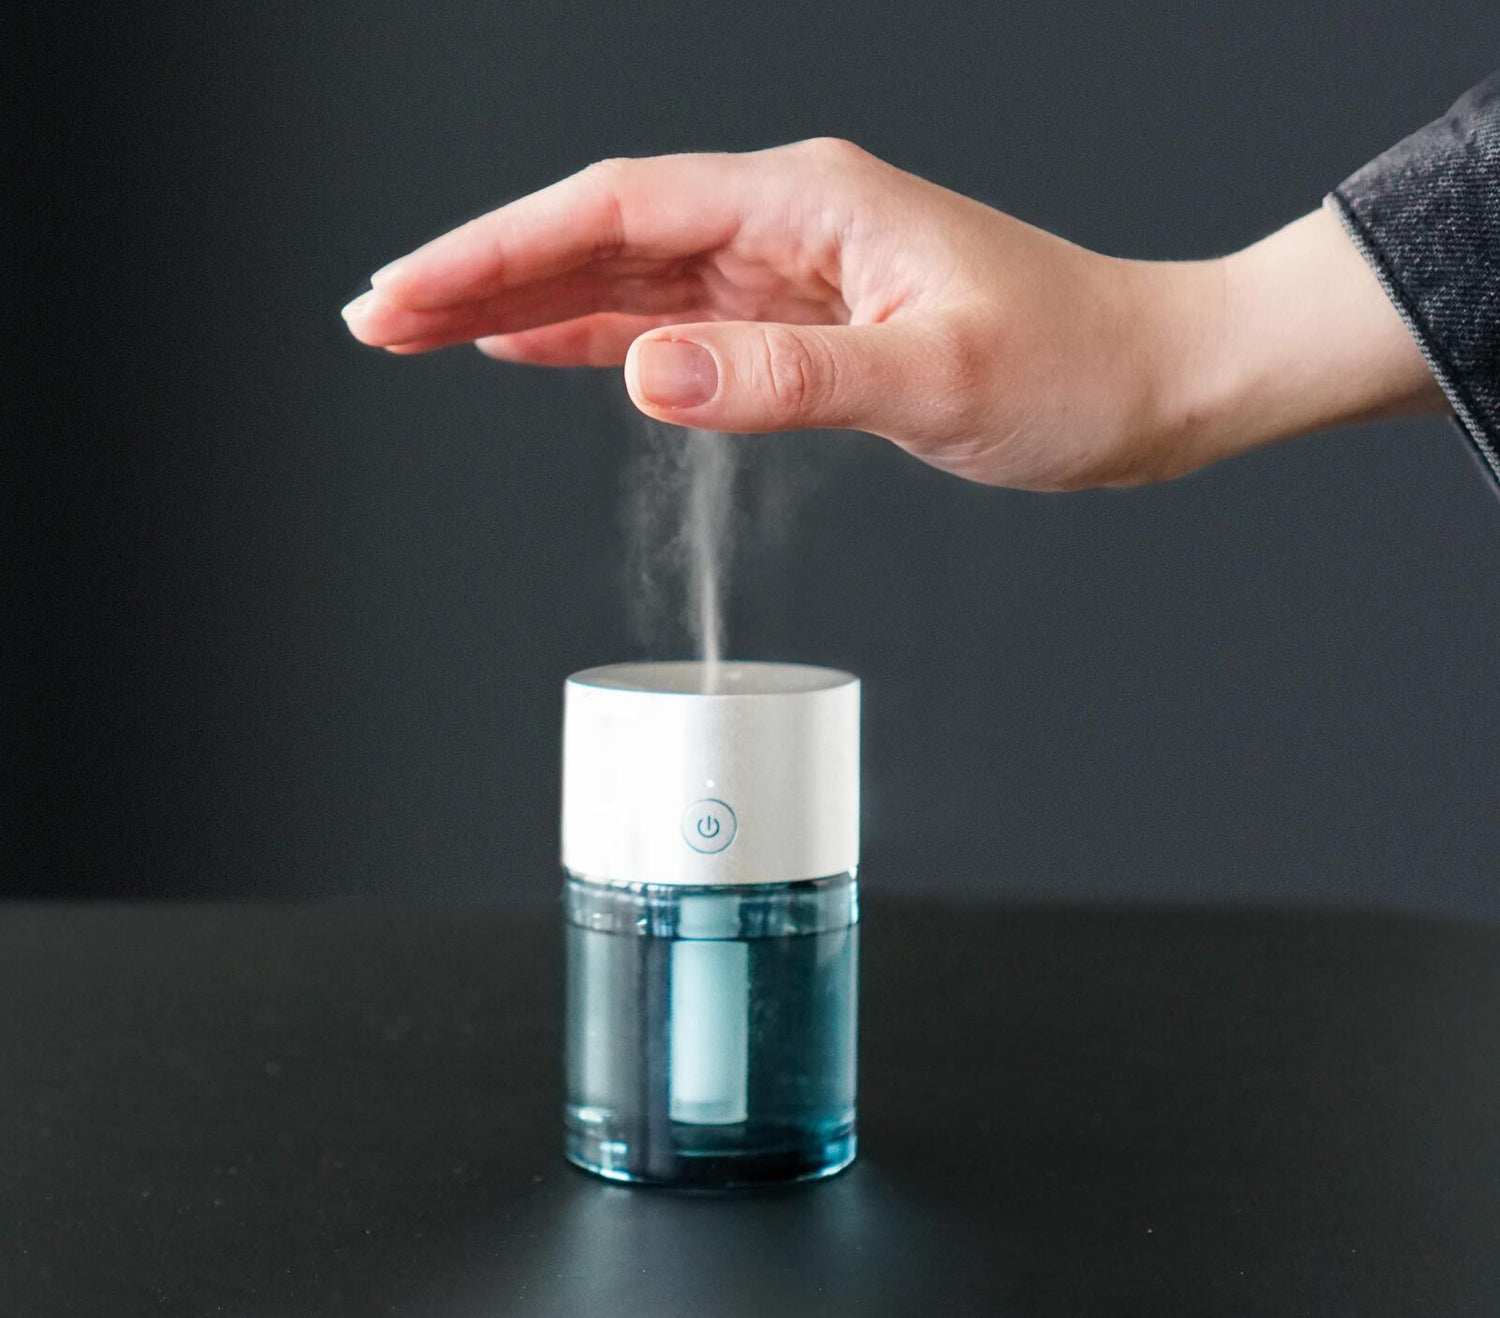 Saltisept Minispray - Die Innovation in der Händedesinfektion